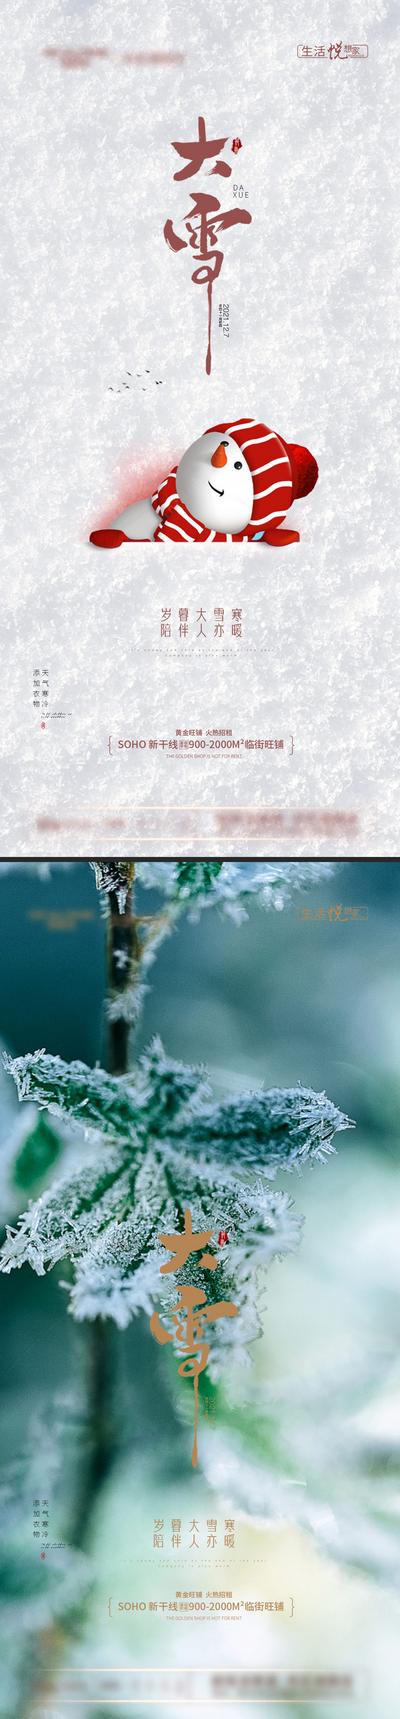 【南门网】广告 海报 节气 大雪 系列 简约 冬天 雪地